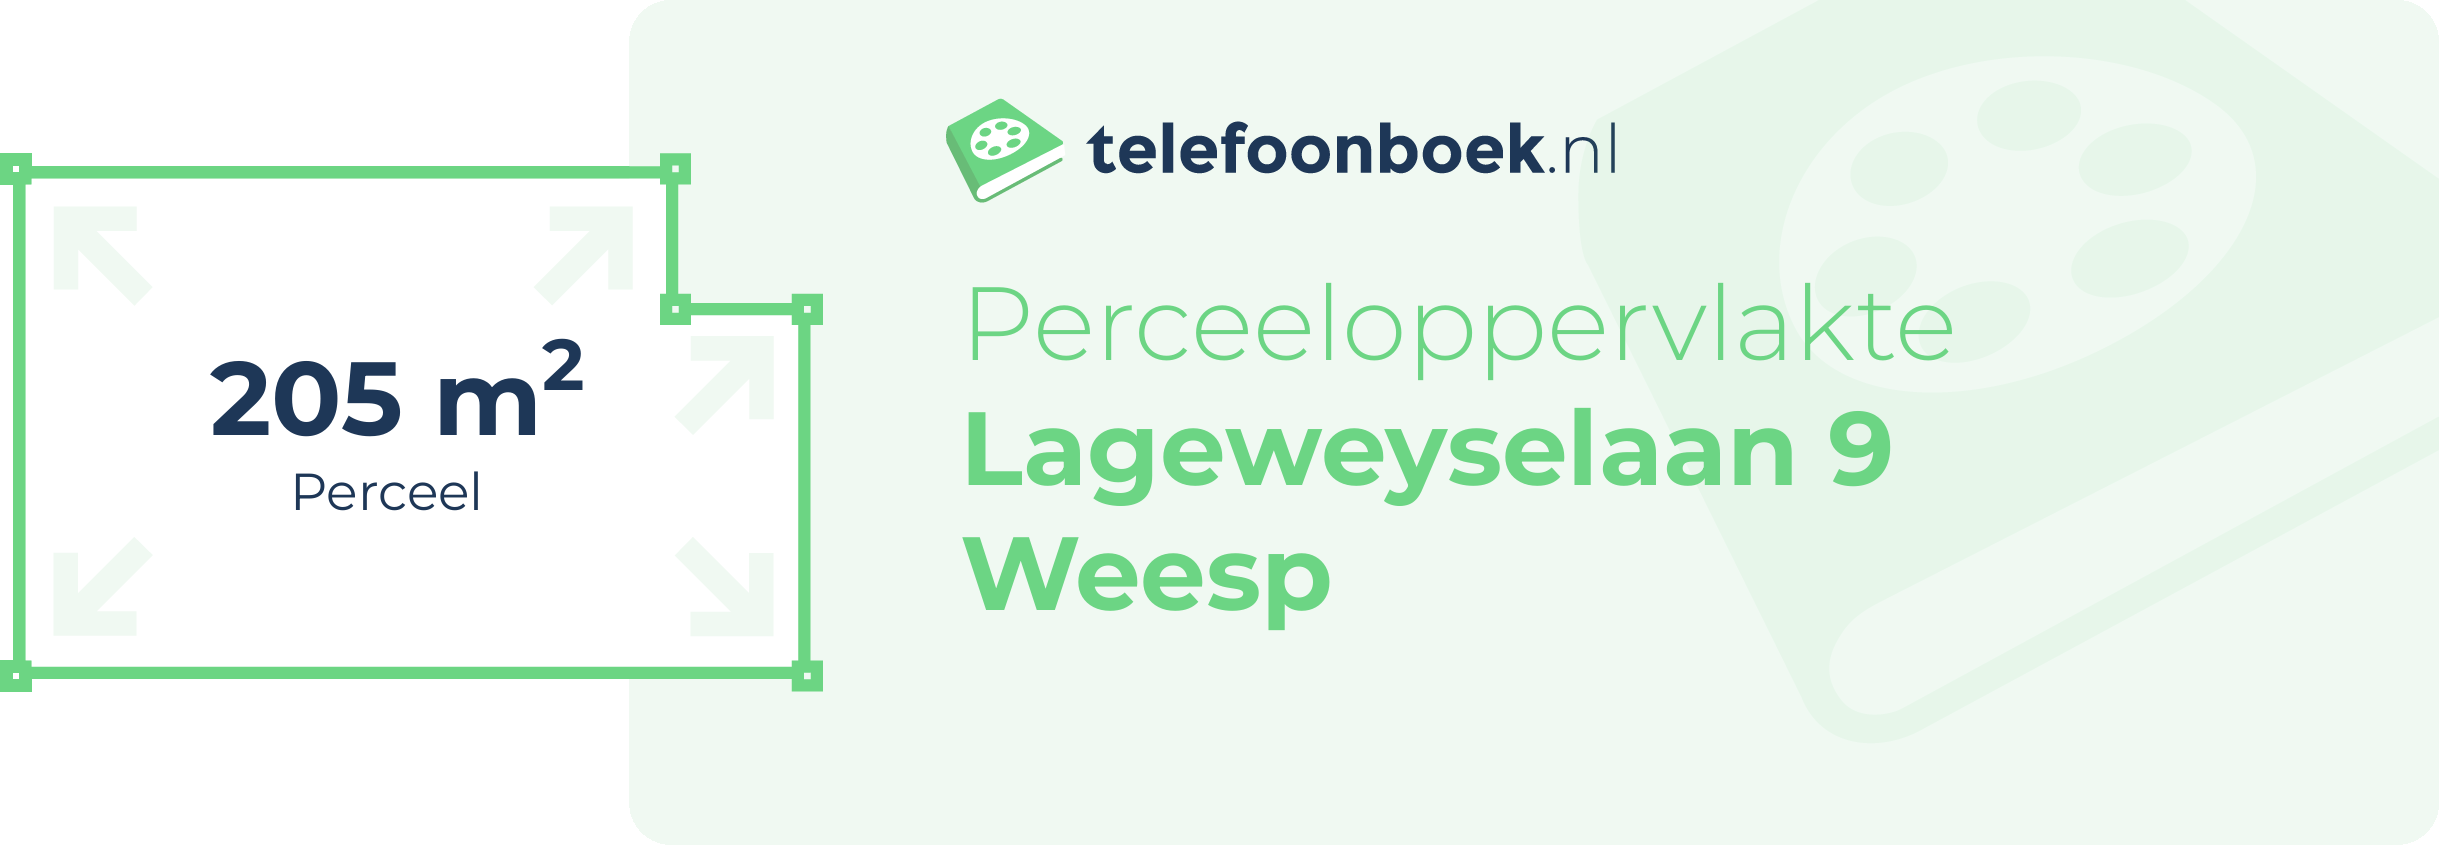 Perceeloppervlakte Lageweyselaan 9 Weesp